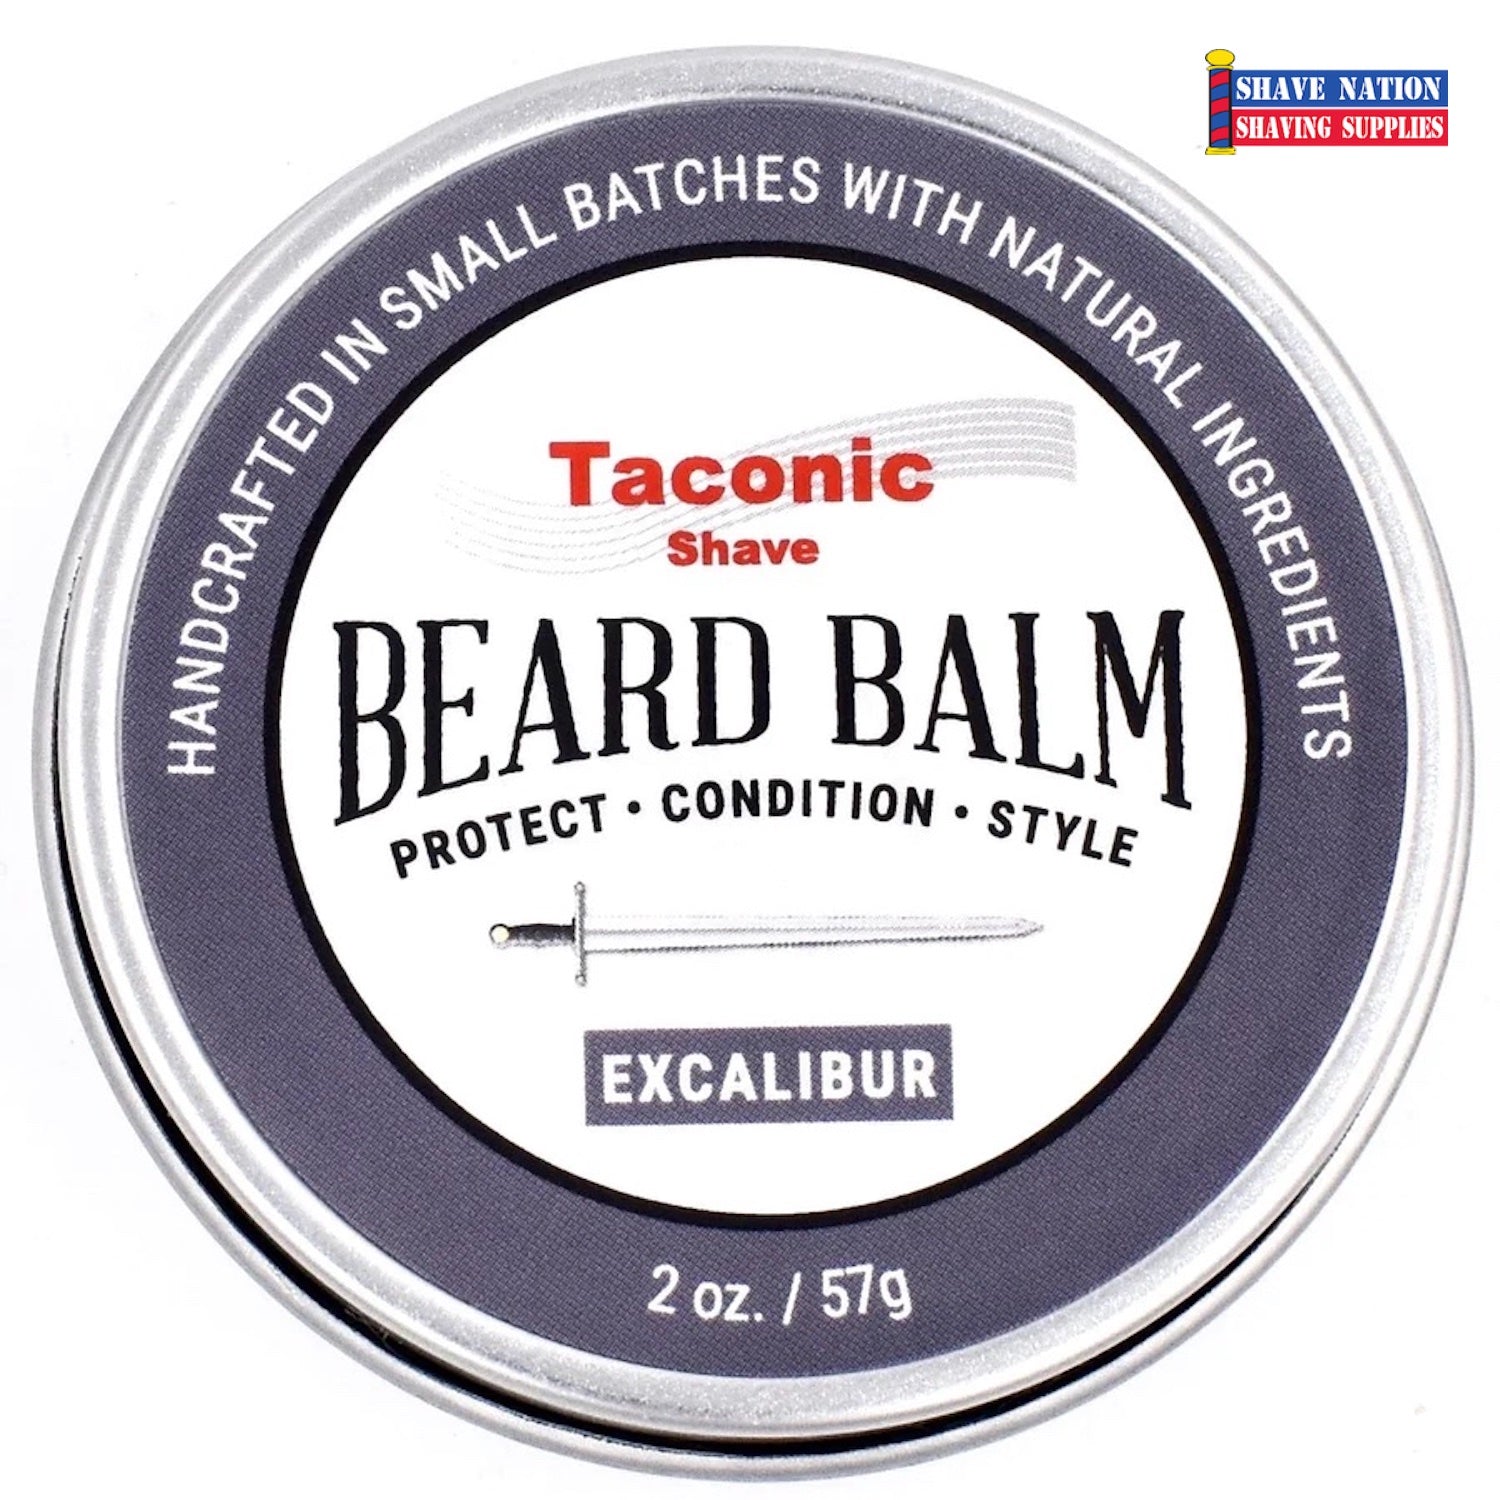 Taconic Beard Balm Excalibur